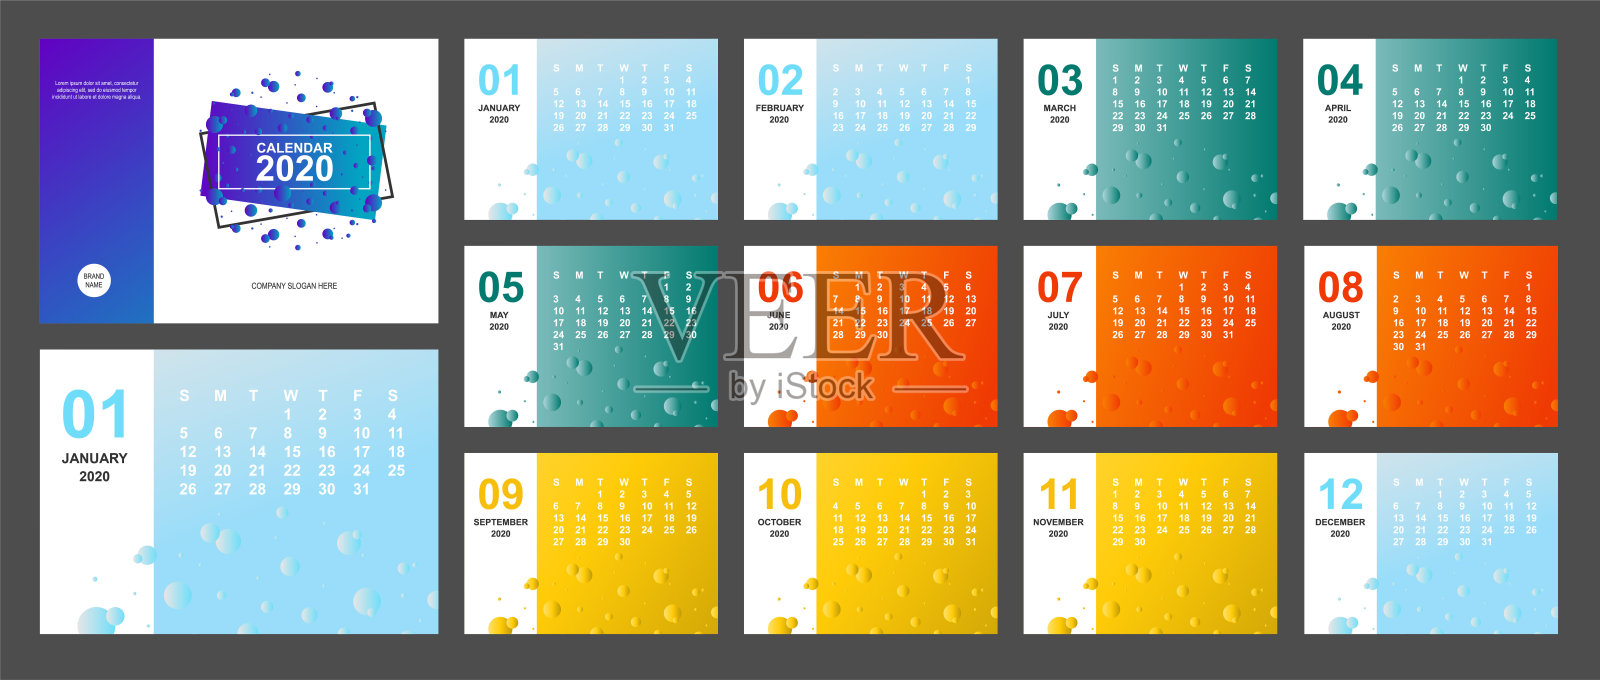 2020年新年日历页面颜色有蓝色、绿色、橙色、黄色渐变，彩色和A5大小的日记桌面。上周星期天开始。业务日和月计划器模板。矢量模拟图设计模板素材